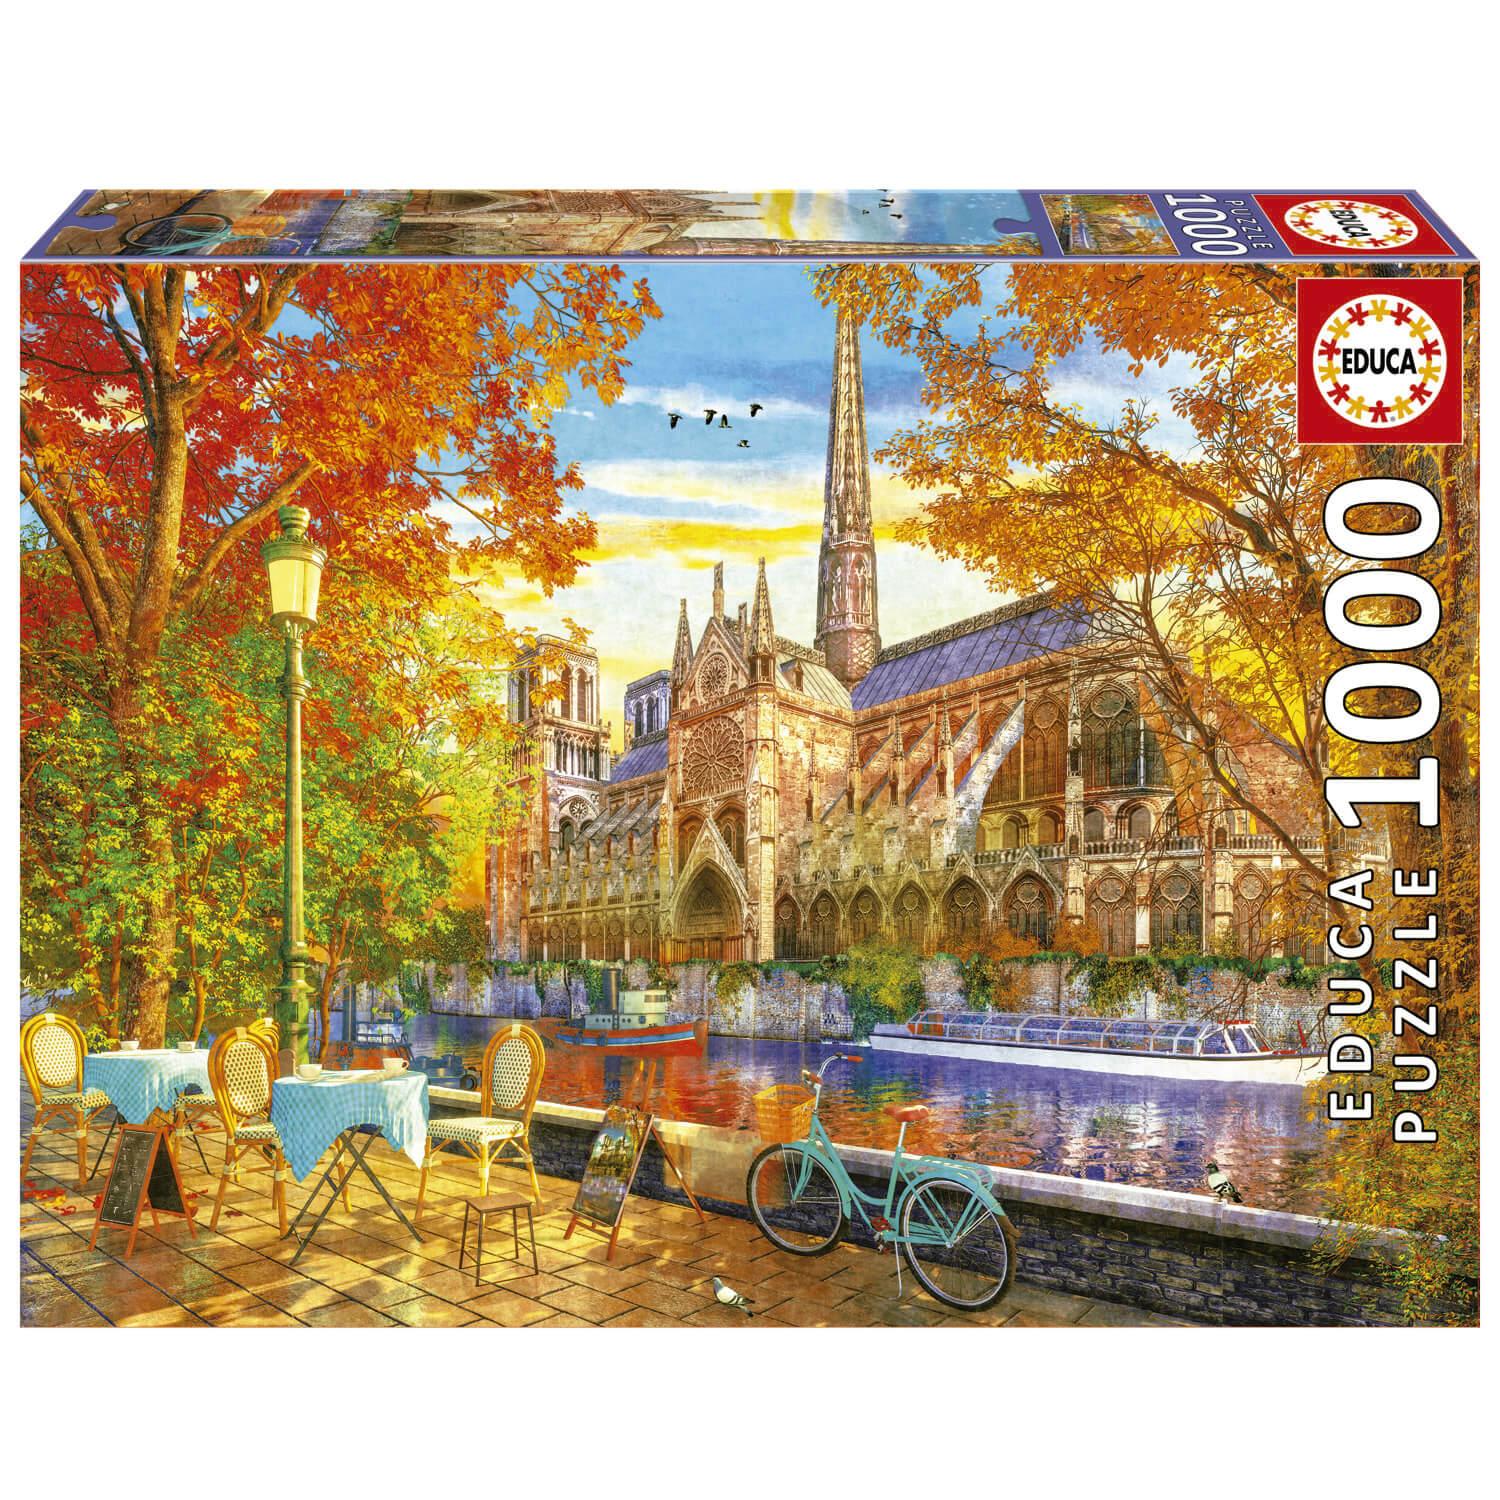 Tapis de puzzle 500 à 2000 pièces : Parking puzzle - Educa - Rue des Puzzles